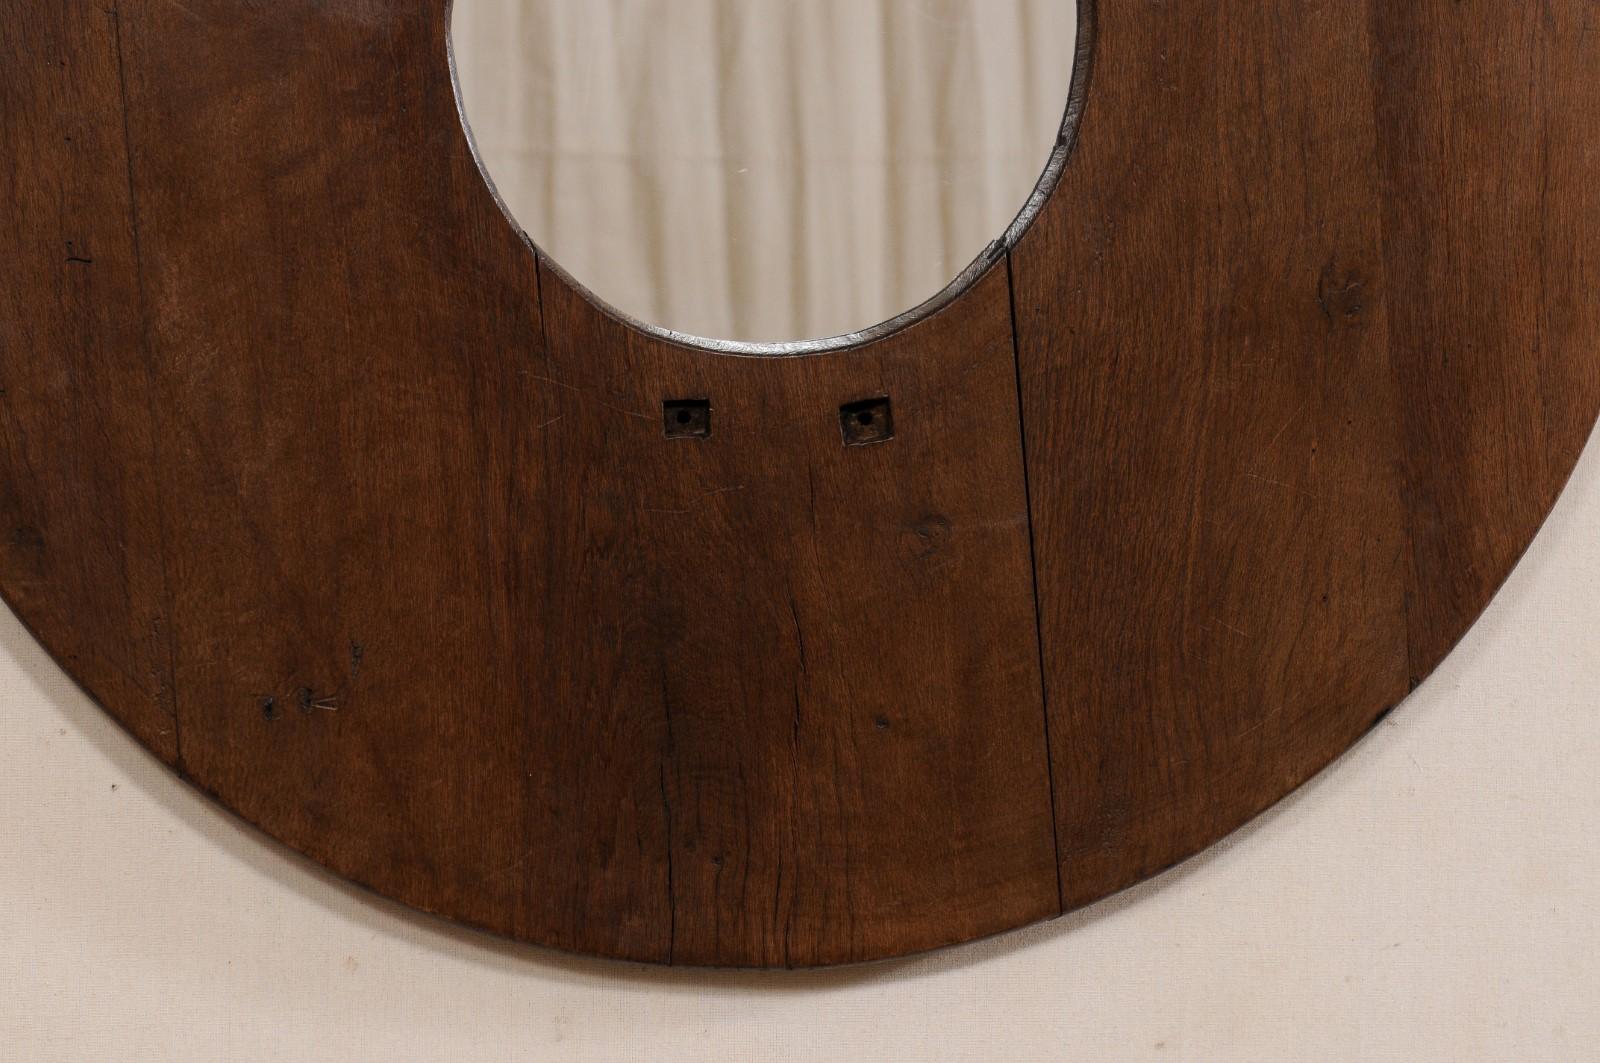 Spanish Antique Round Brazier Mirror, 3.5 Ft Diameter For Sale 1